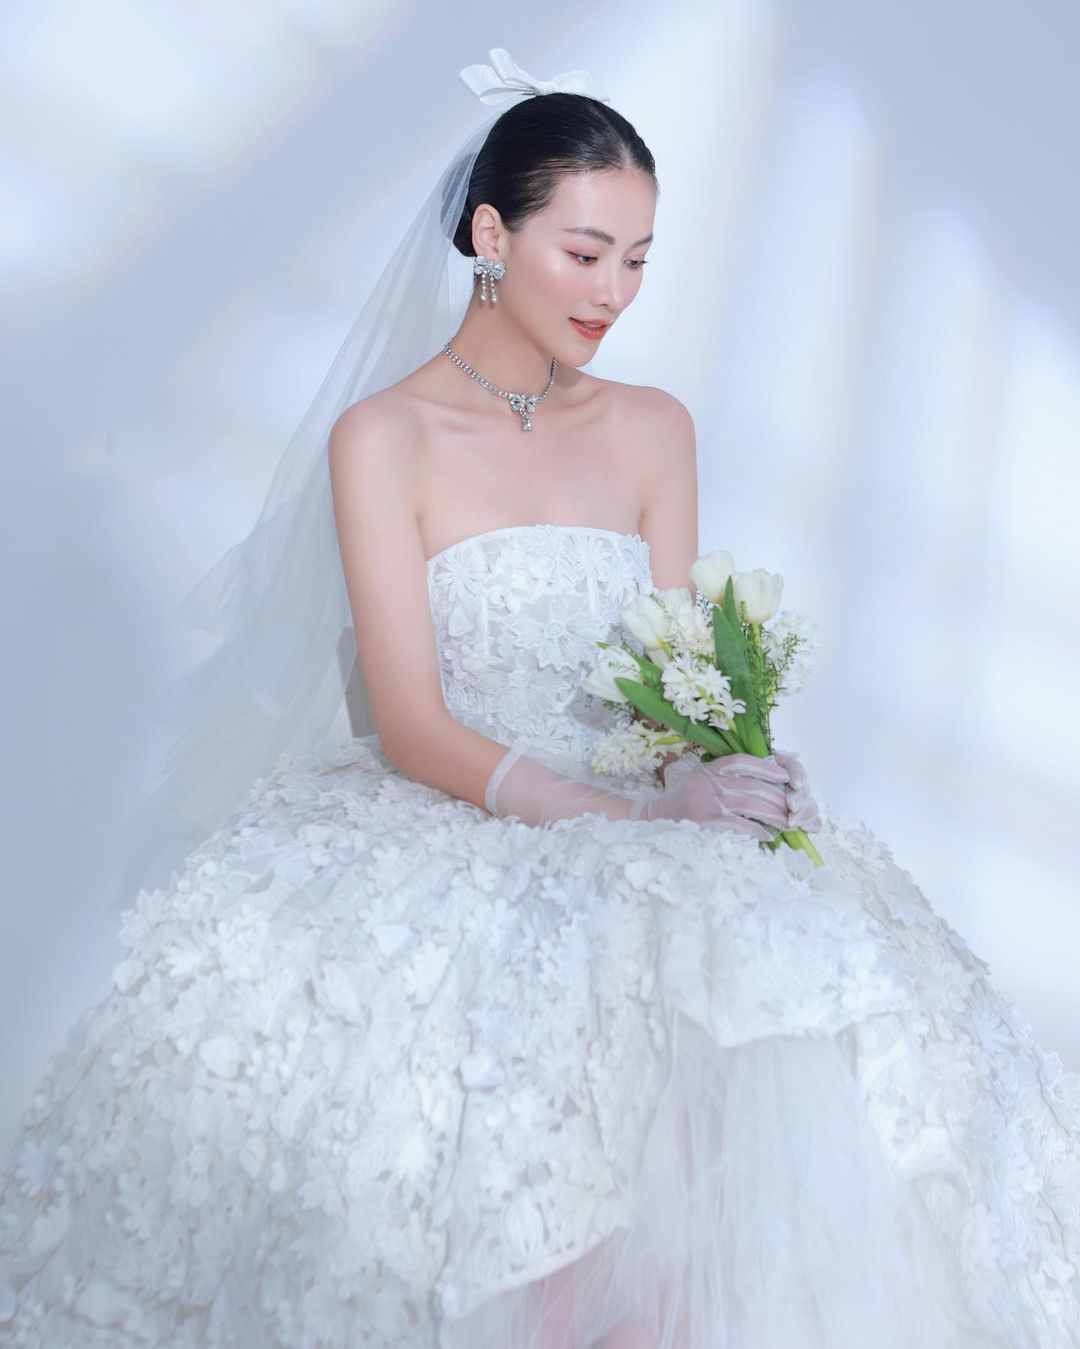 Hoa hậu Phương Khánh bất ngờ đăng ảnh mặc váy cưới để thông báo &quot;ngày đặc biệt&quot; - Ảnh 1.